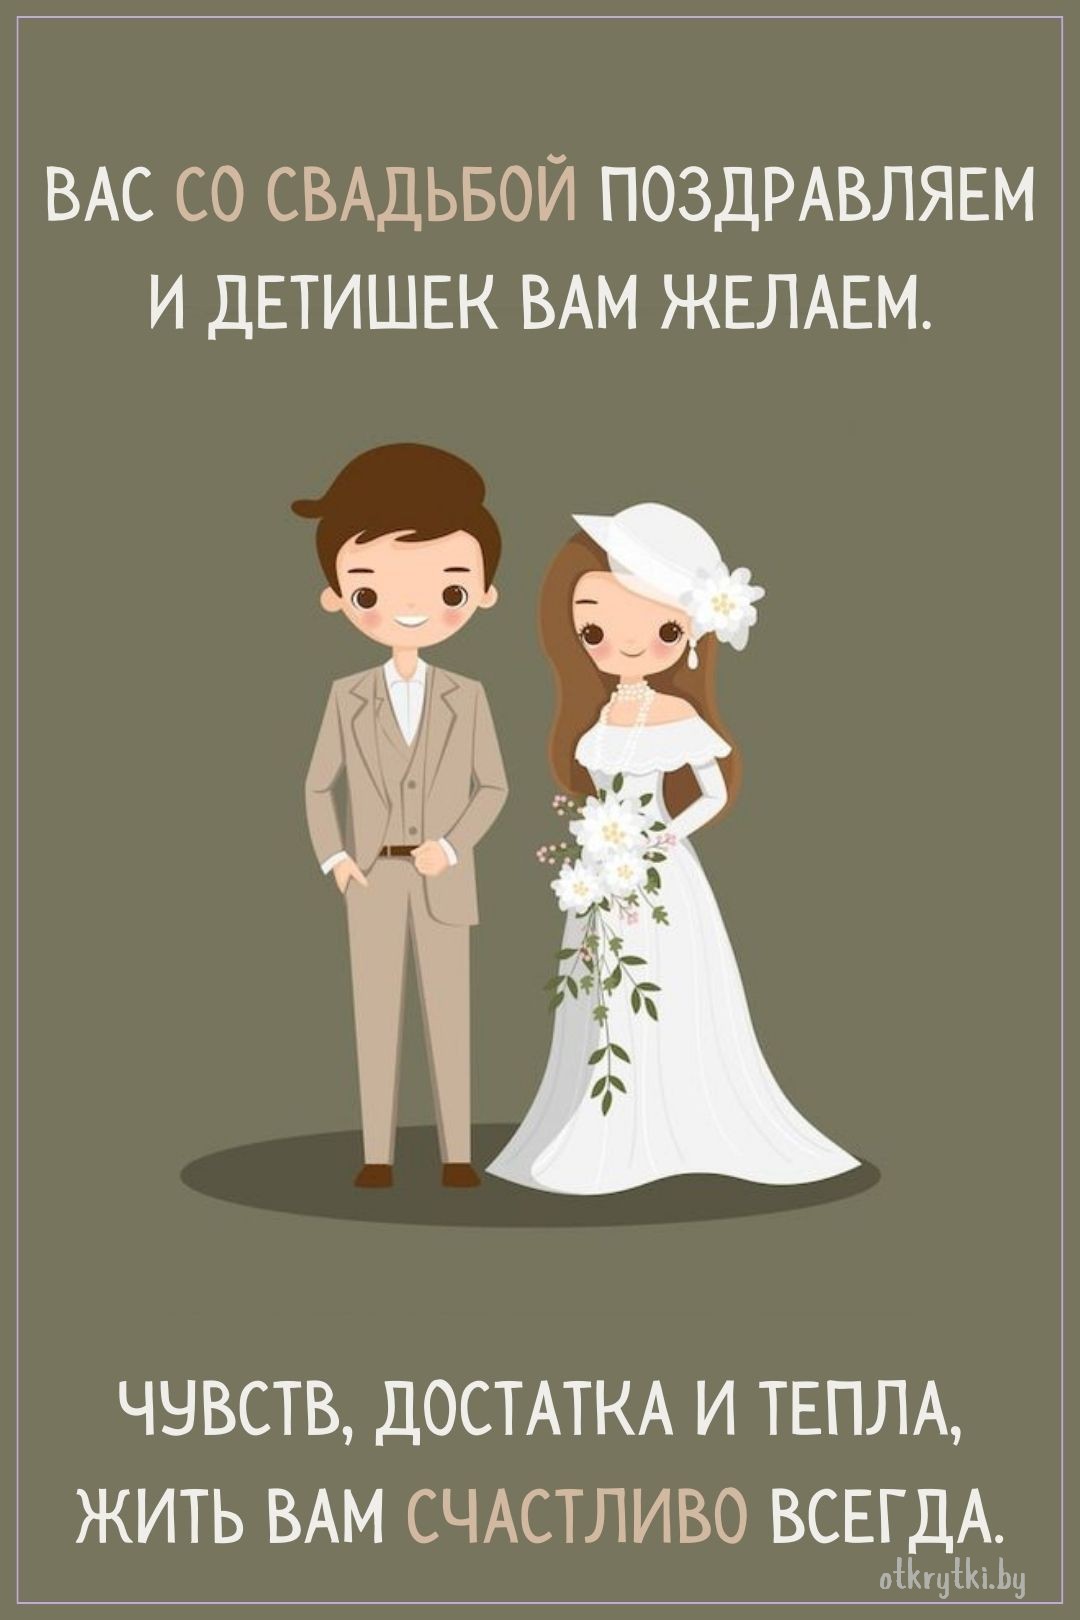 Поздравительная открытка со свадьбой